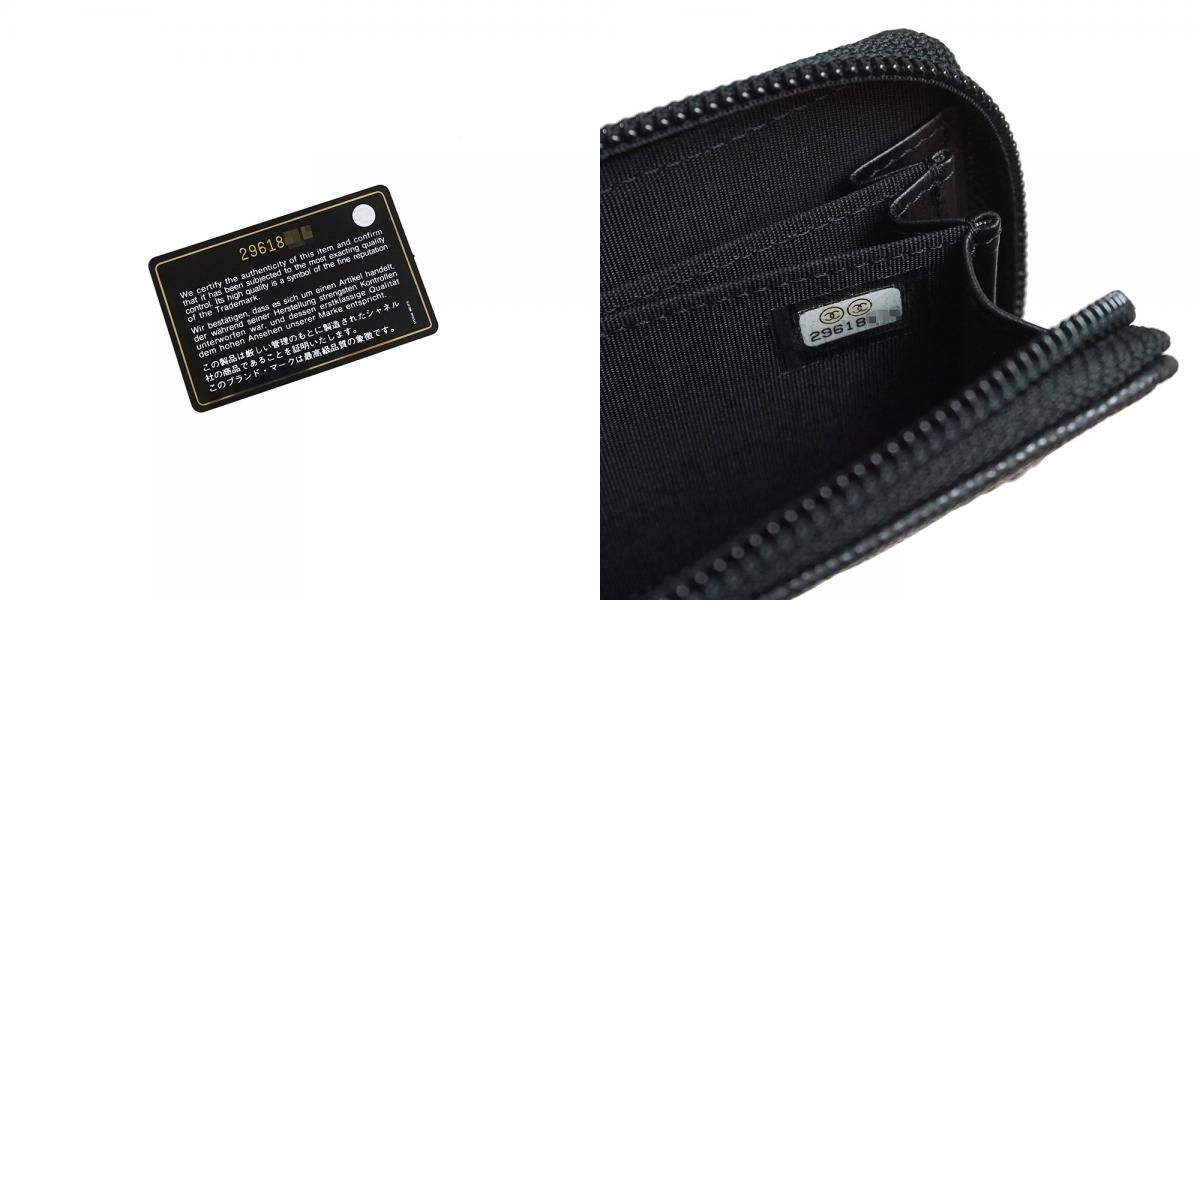 シャネル コインケース ボーイシャネル ココマーク マトラッセ A80602 CHANEL 小銭入れ コインパース 財布 カードケース 黒